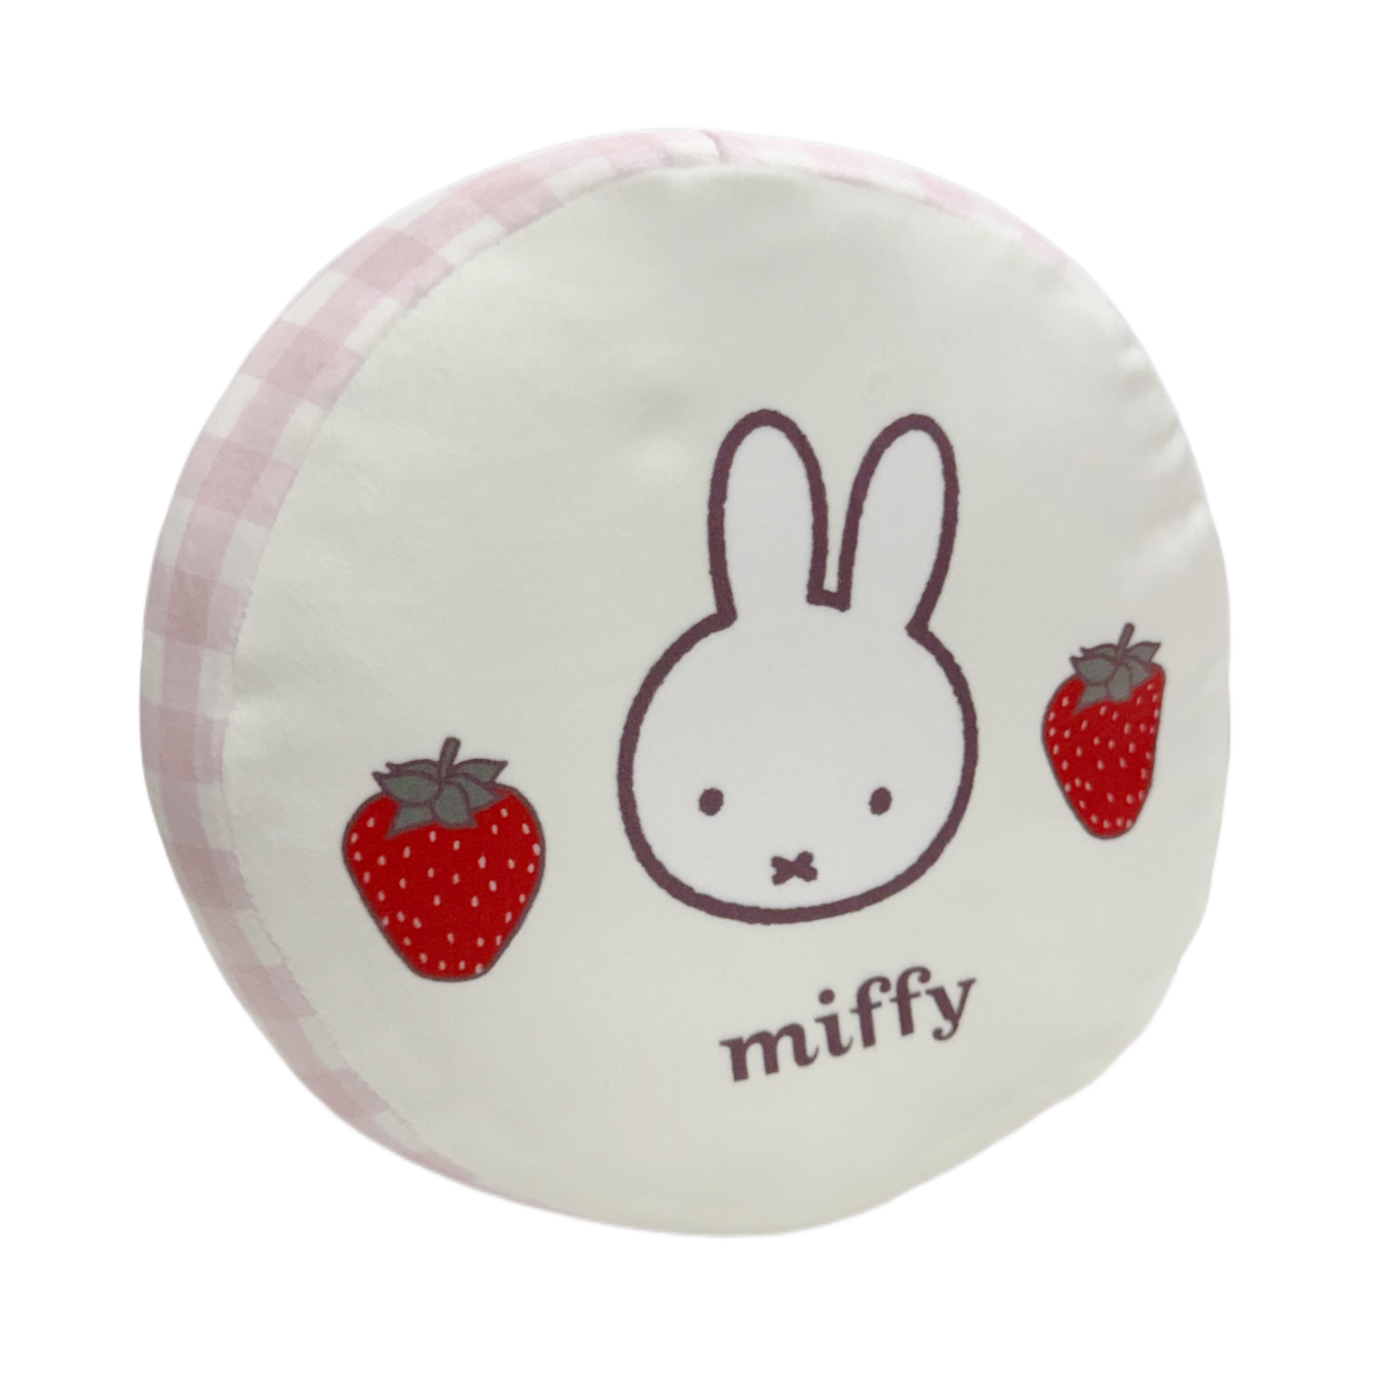 Miffy Strawberry Round Cushion